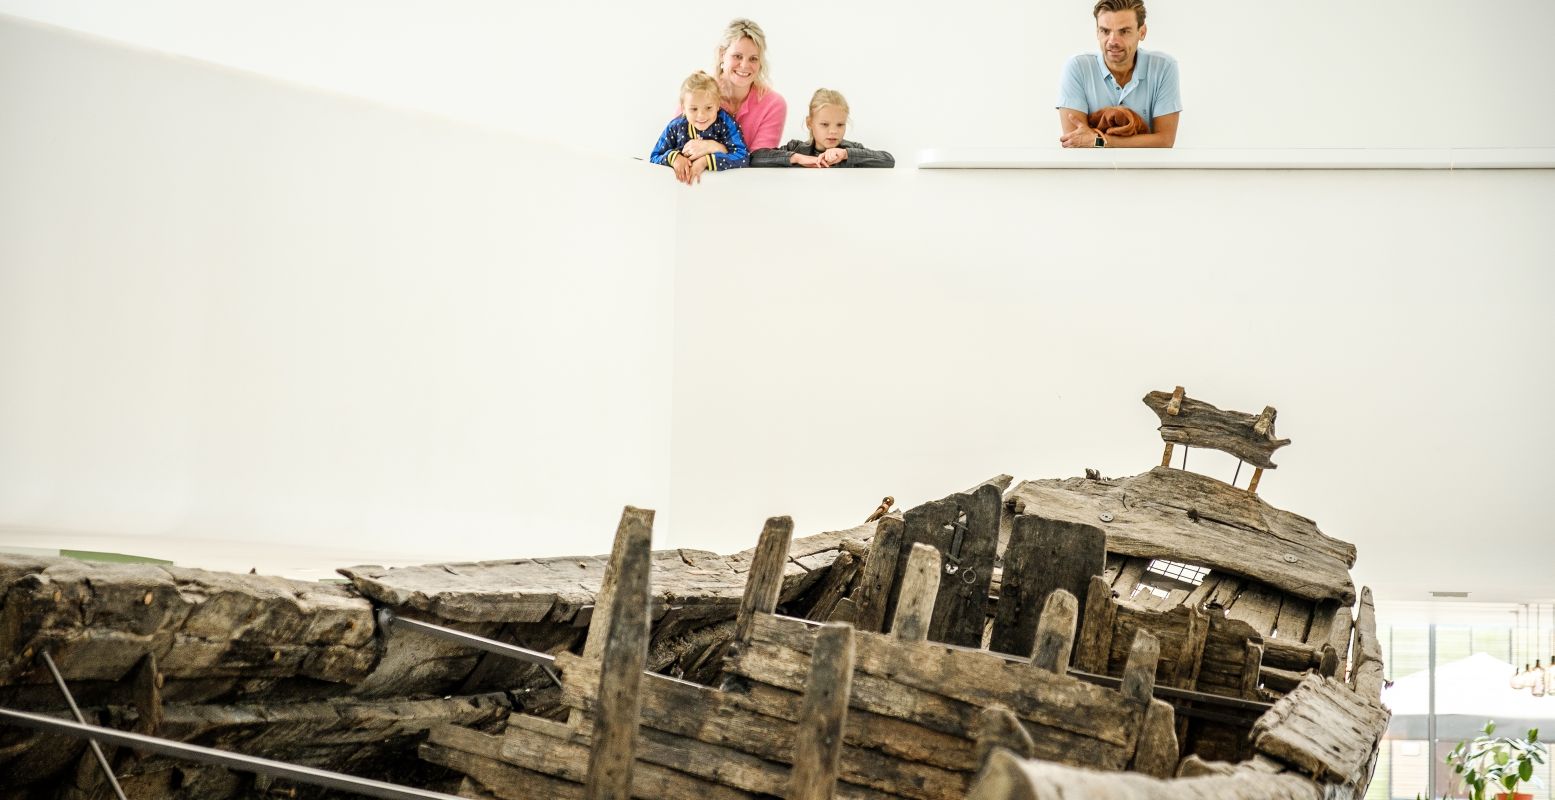 Bewonder een 2.000 jaar oud Romeins schip in Castellum Hoge Woerd. Foto: Jelle Verhoeks